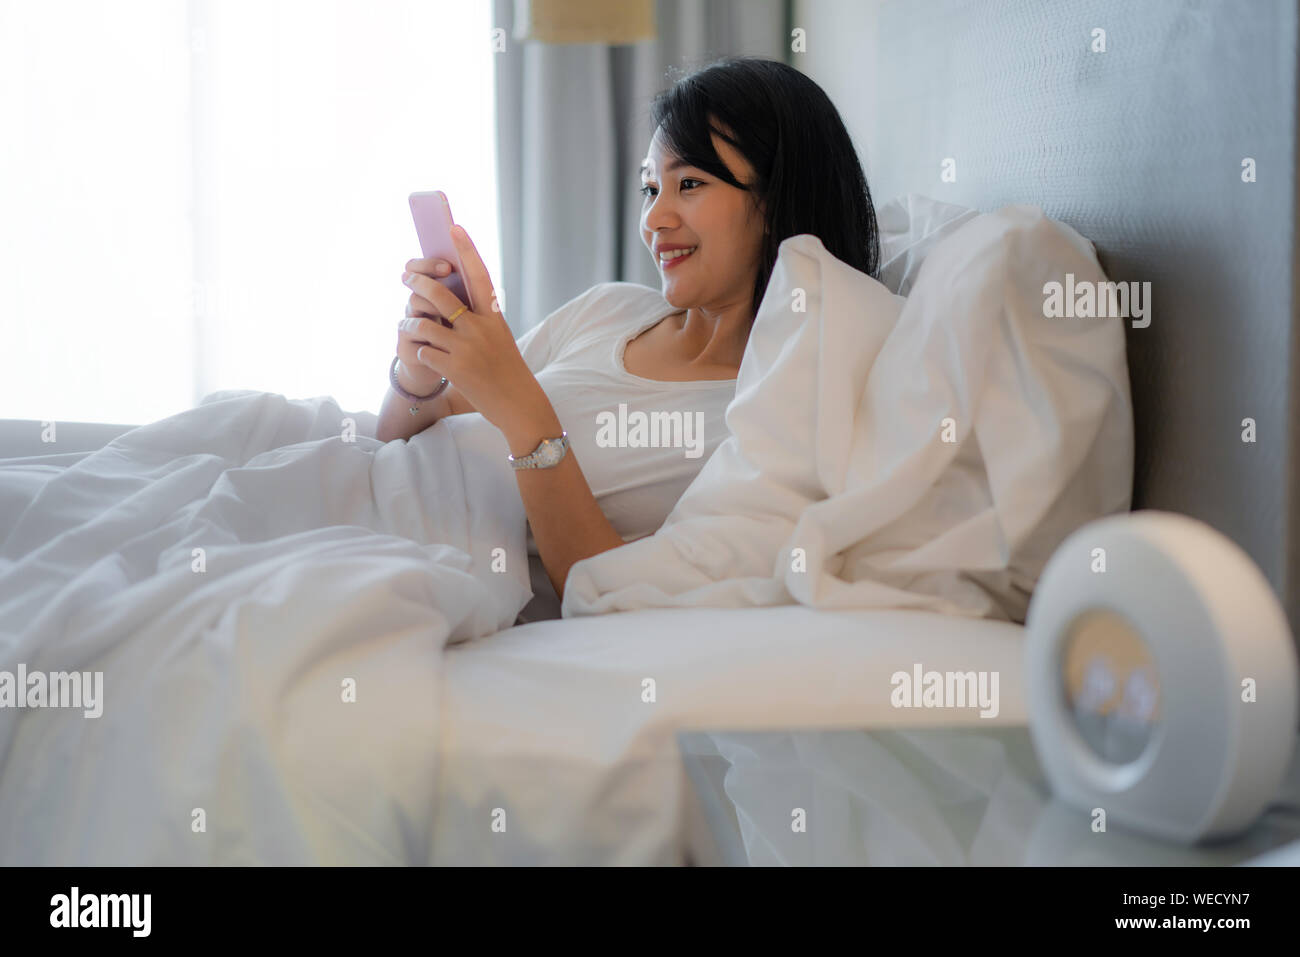 Morgen mit Gadget. Asiatische schöne junge Frau auf dem Bett liegend mit Smartphone. Stockfoto